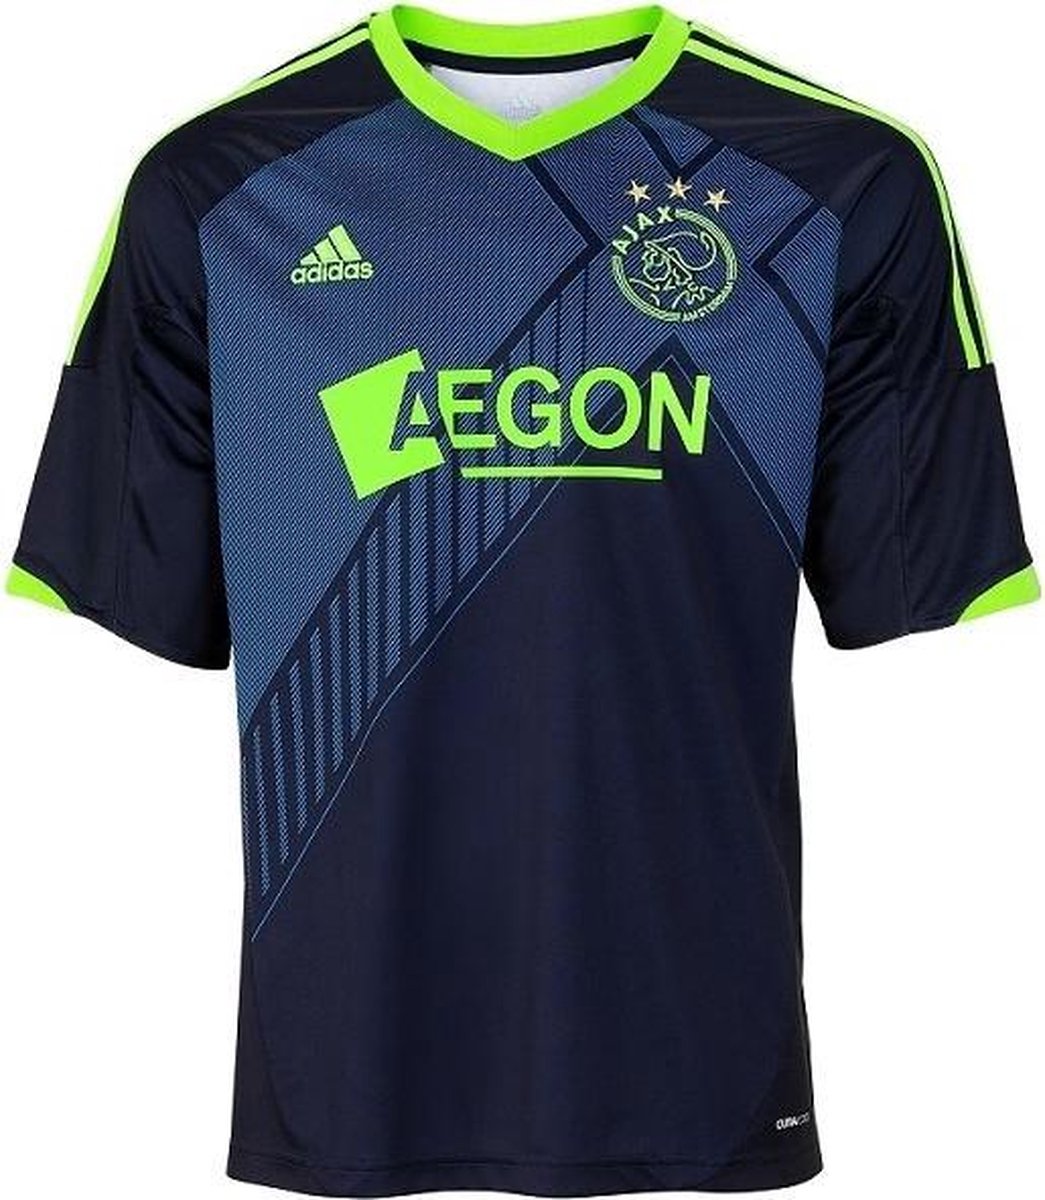 Adidas Ajax wedstrijdshirt 12/13 maat S bol.com